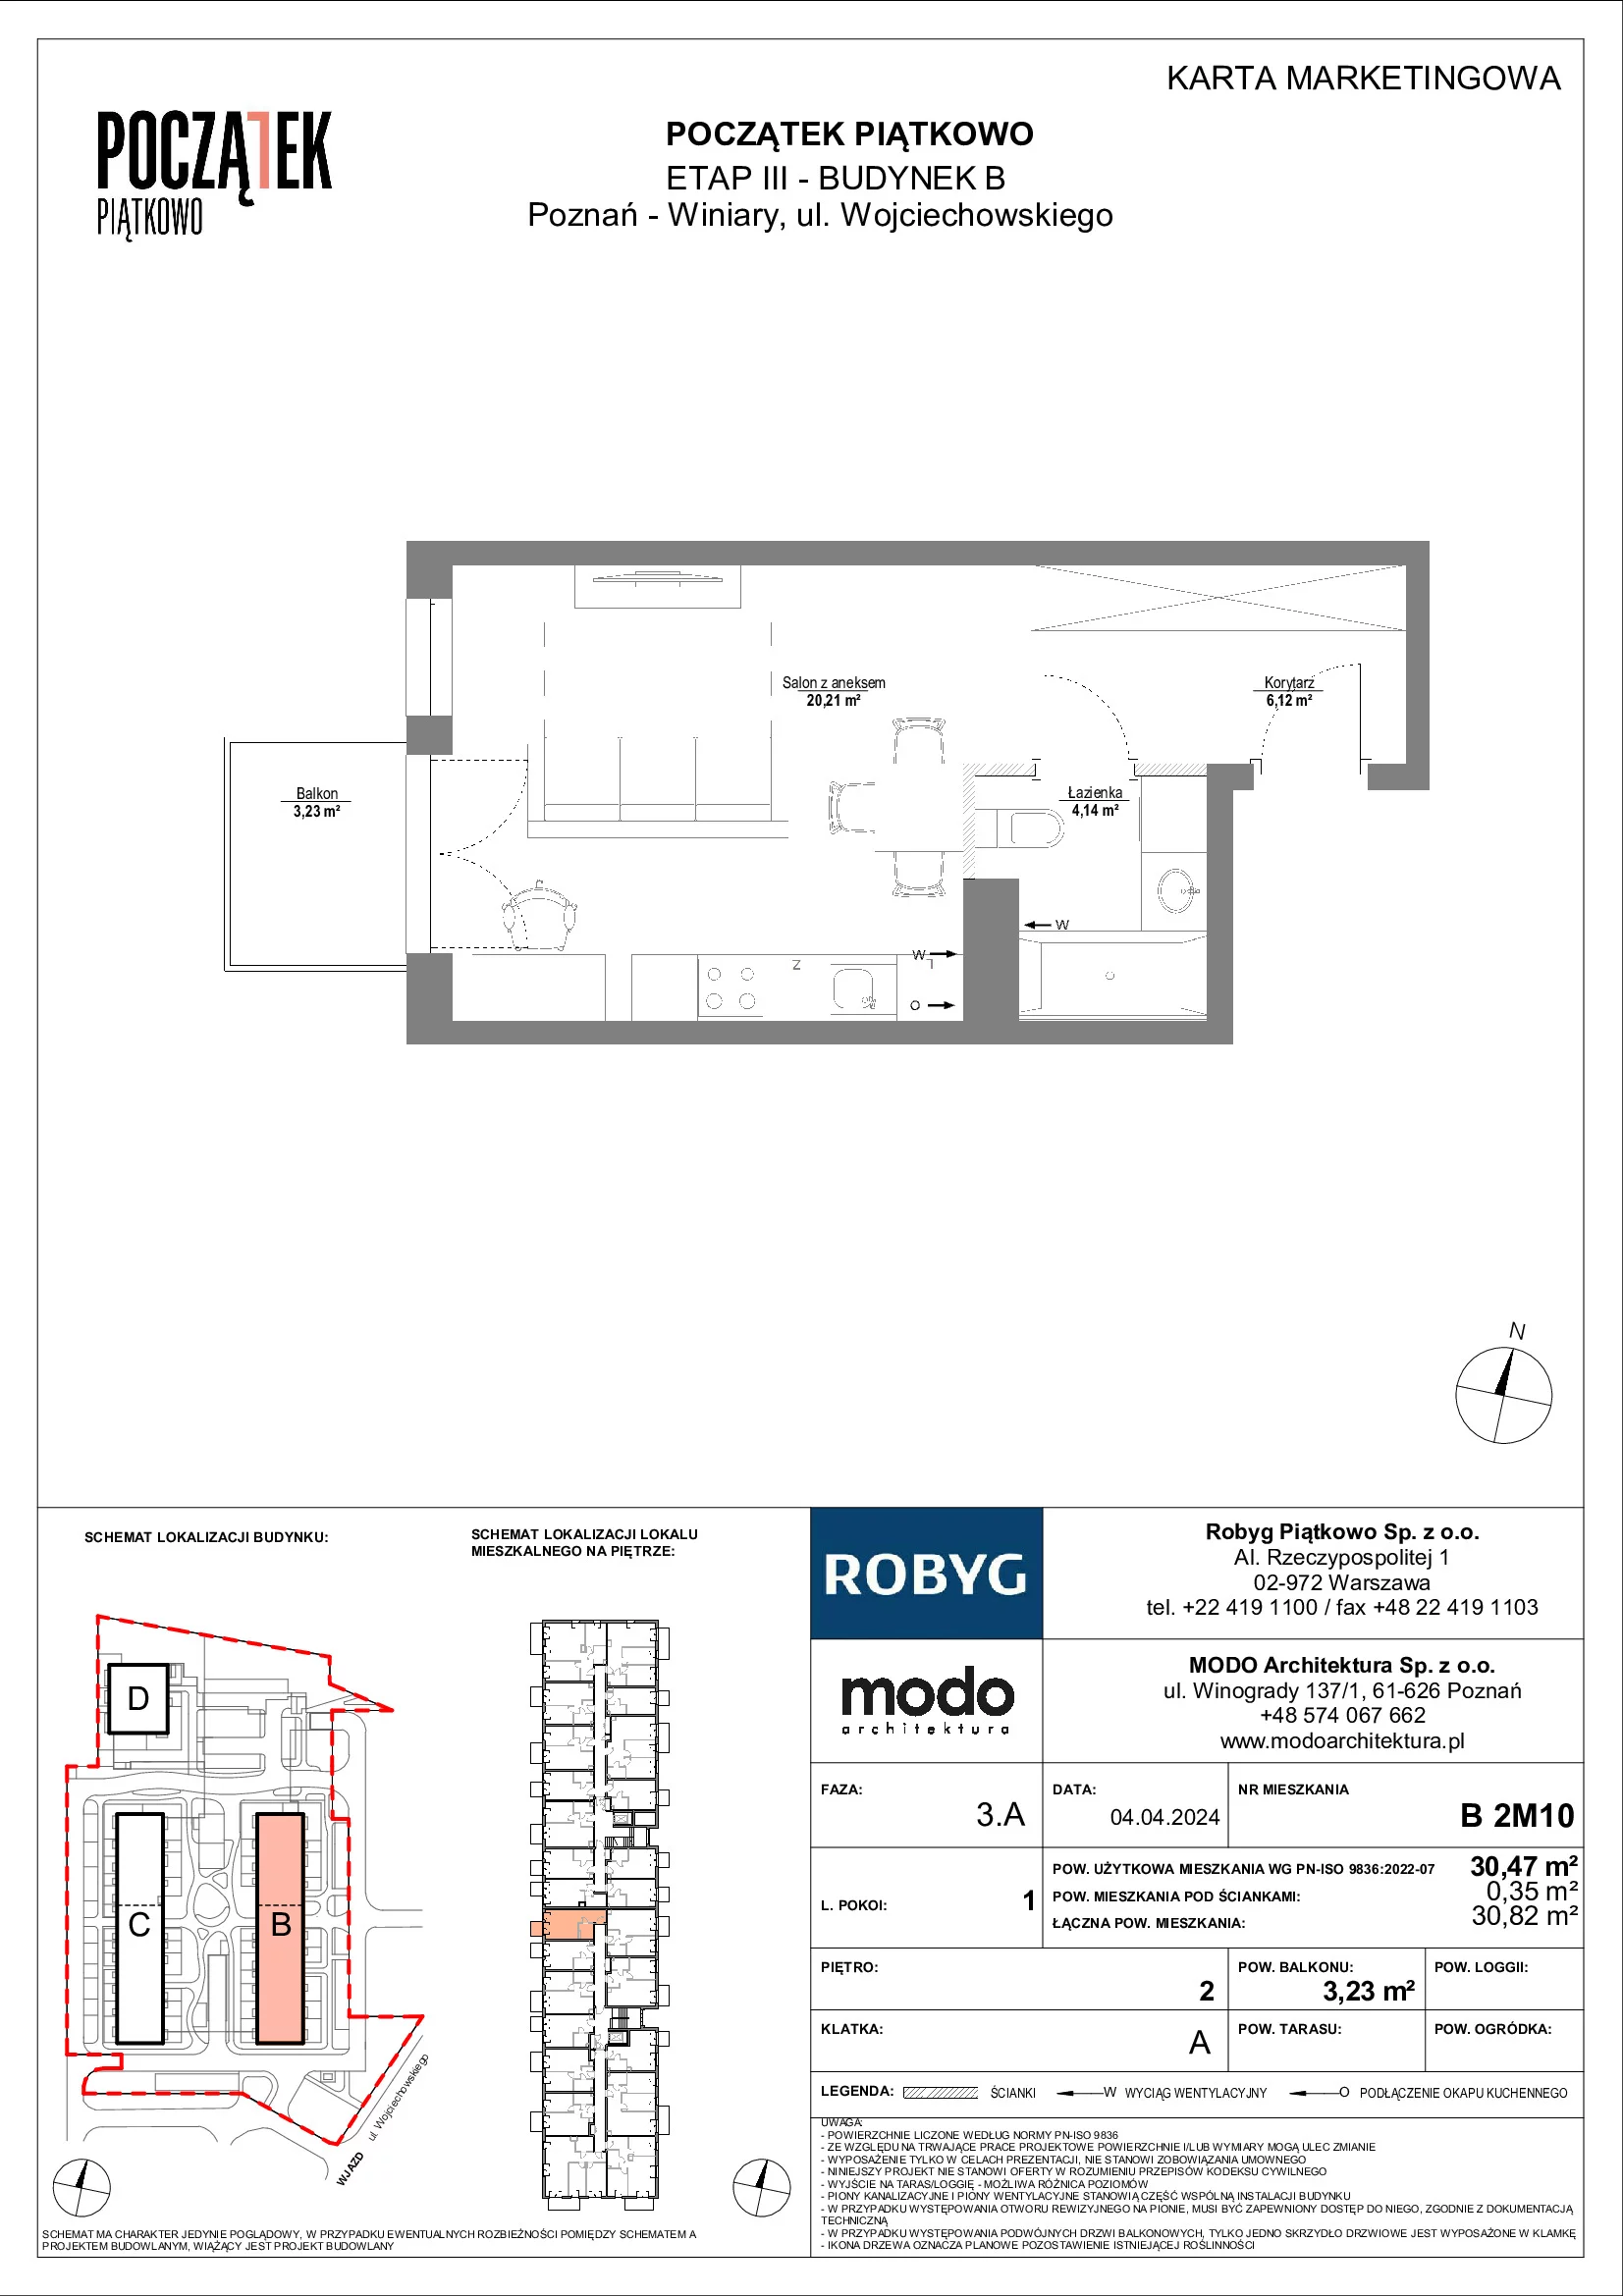 Mieszkanie 30,47 m², piętro 2, oferta nr B.2M10, Początek Piątkowo, Poznań, Piątkowo, ul. Wojciechowskiego